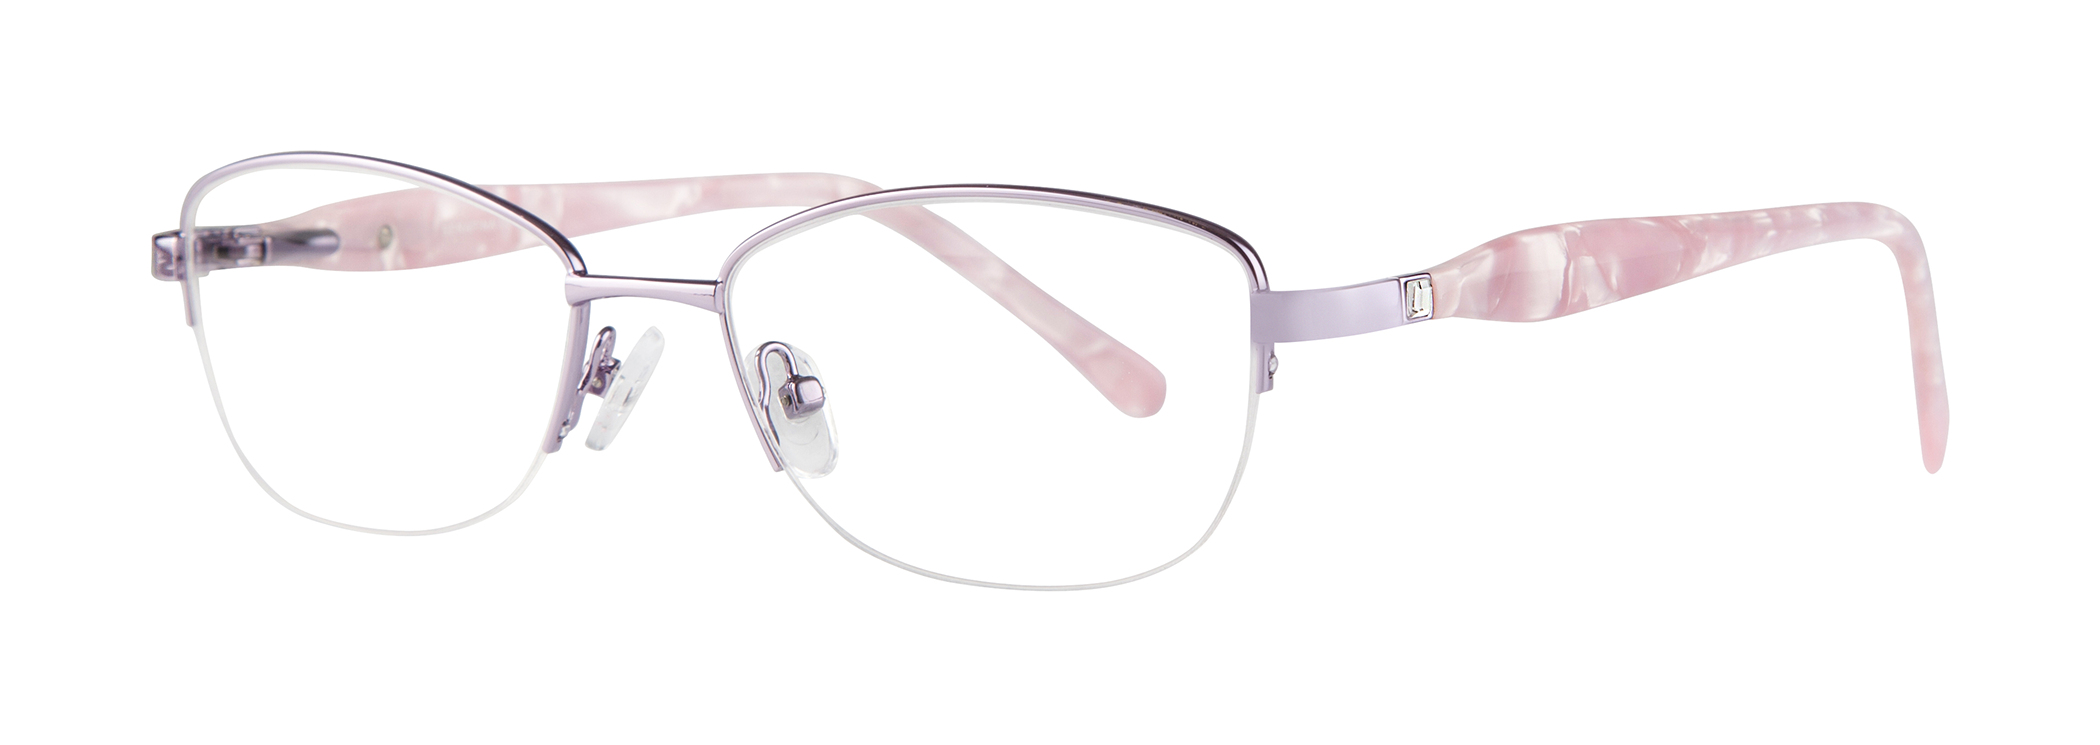 Picture of Serafina Eyewear Eyeglasses Flora